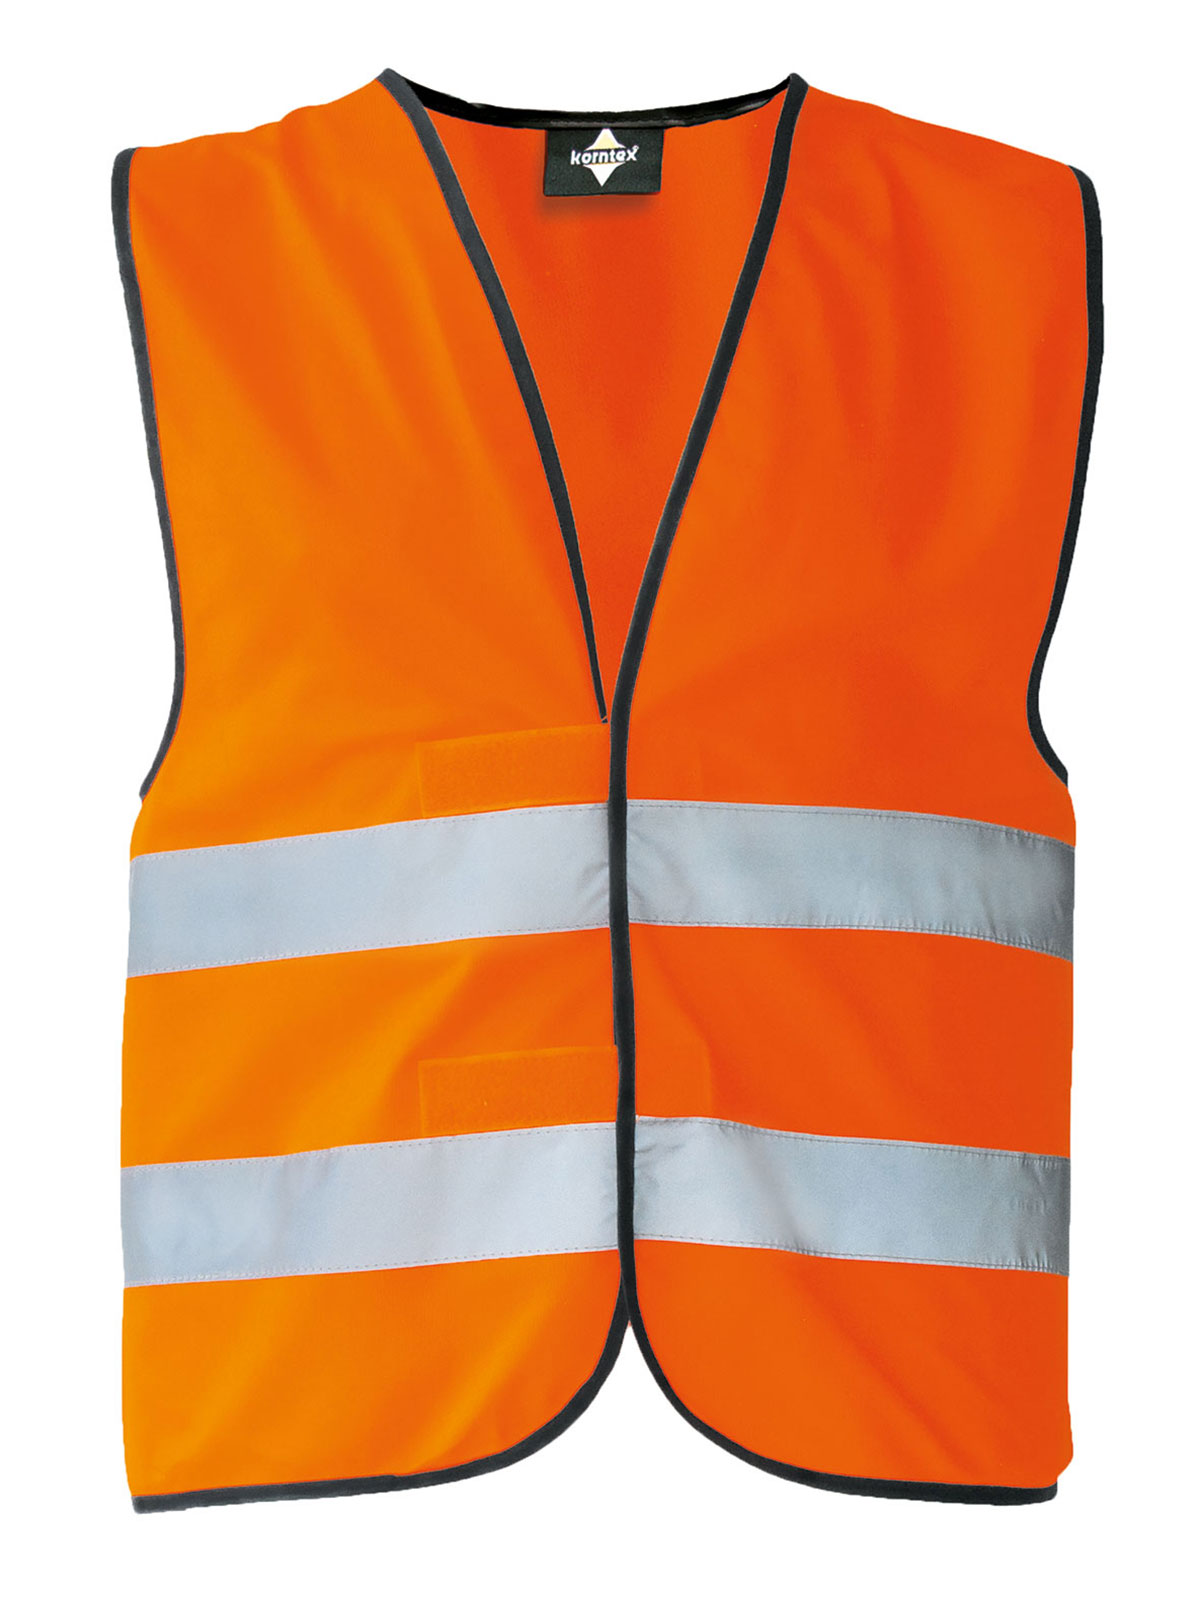 co2-neutral-safety-vest-orange.webp